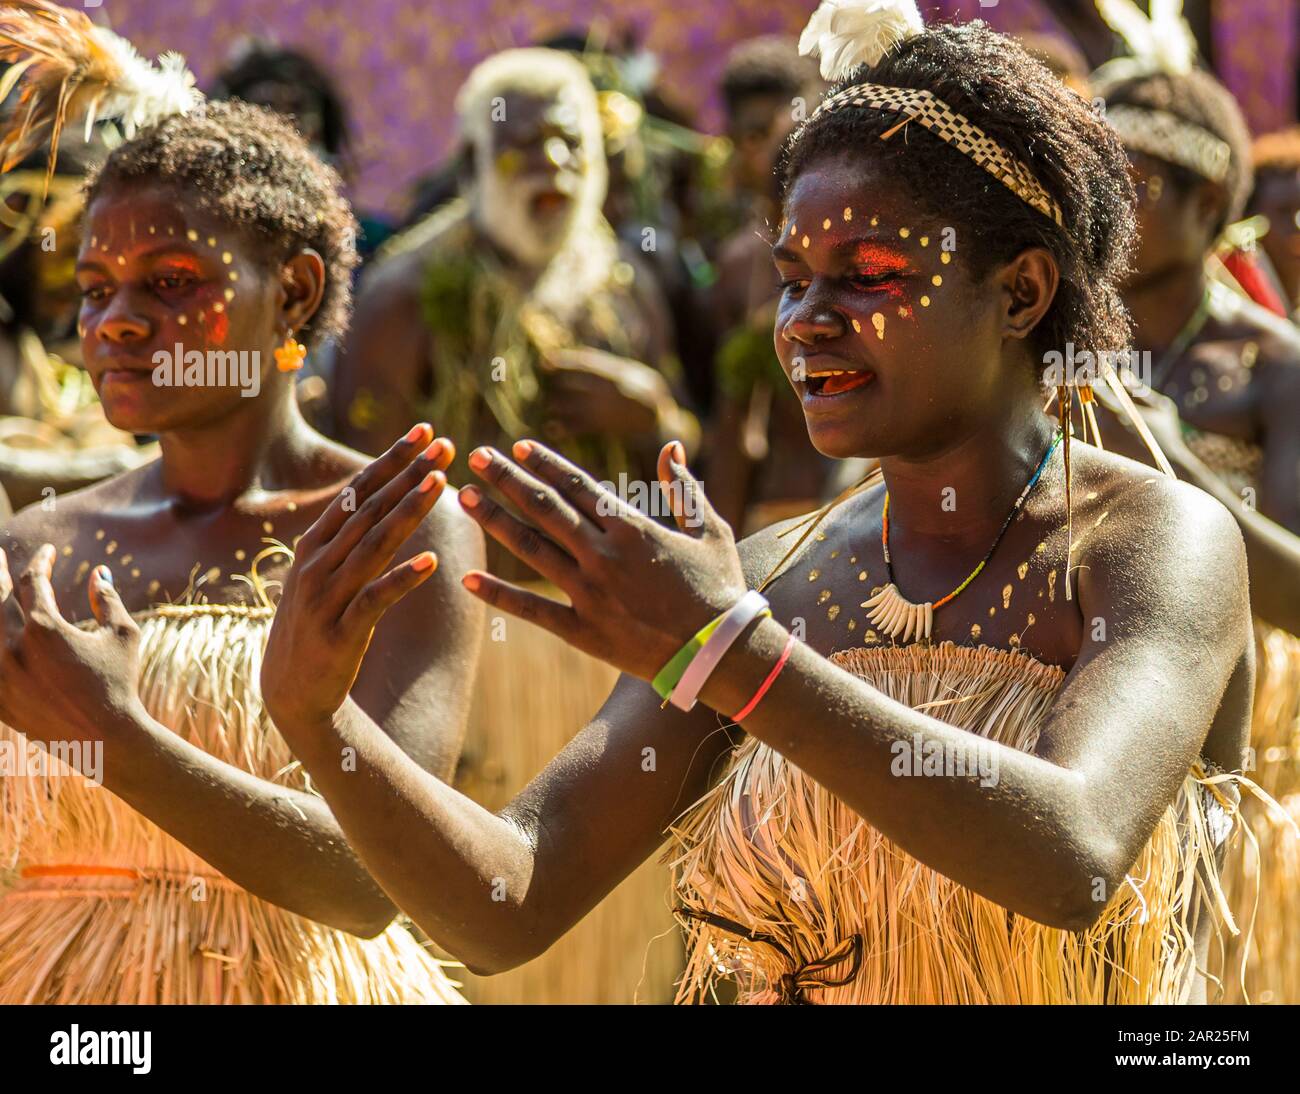 Sing-Sing à Bougainville, Papouasie-Nouvelle-Guinée. Festival de village coloré à Bougainville avec musique et danse Banque D'Images